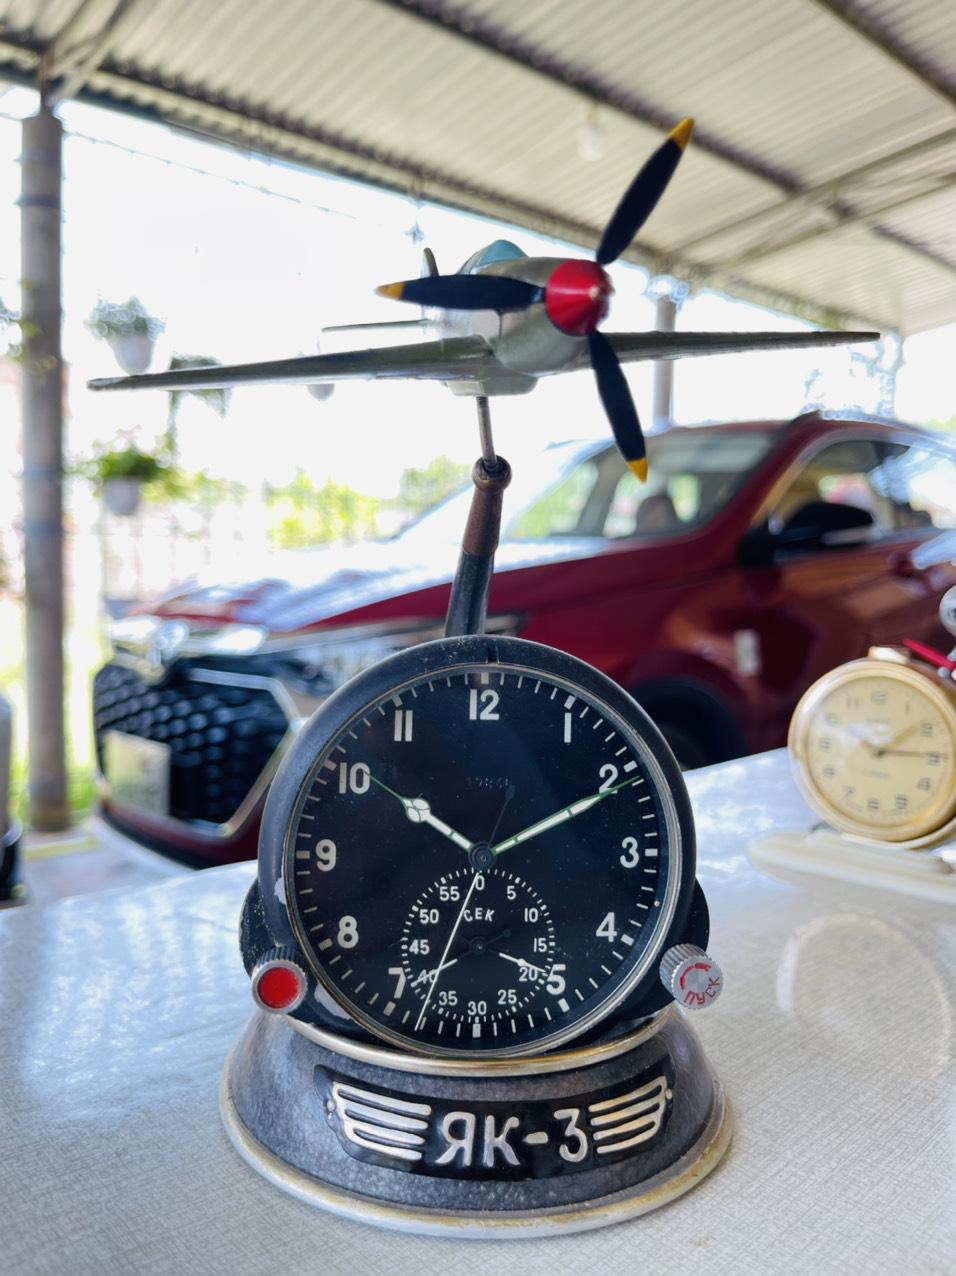 Đồng hồ phi công nga chính hãng 100%, bảo hành 1 năm, hàng sẵn, giao hàng tận nơi